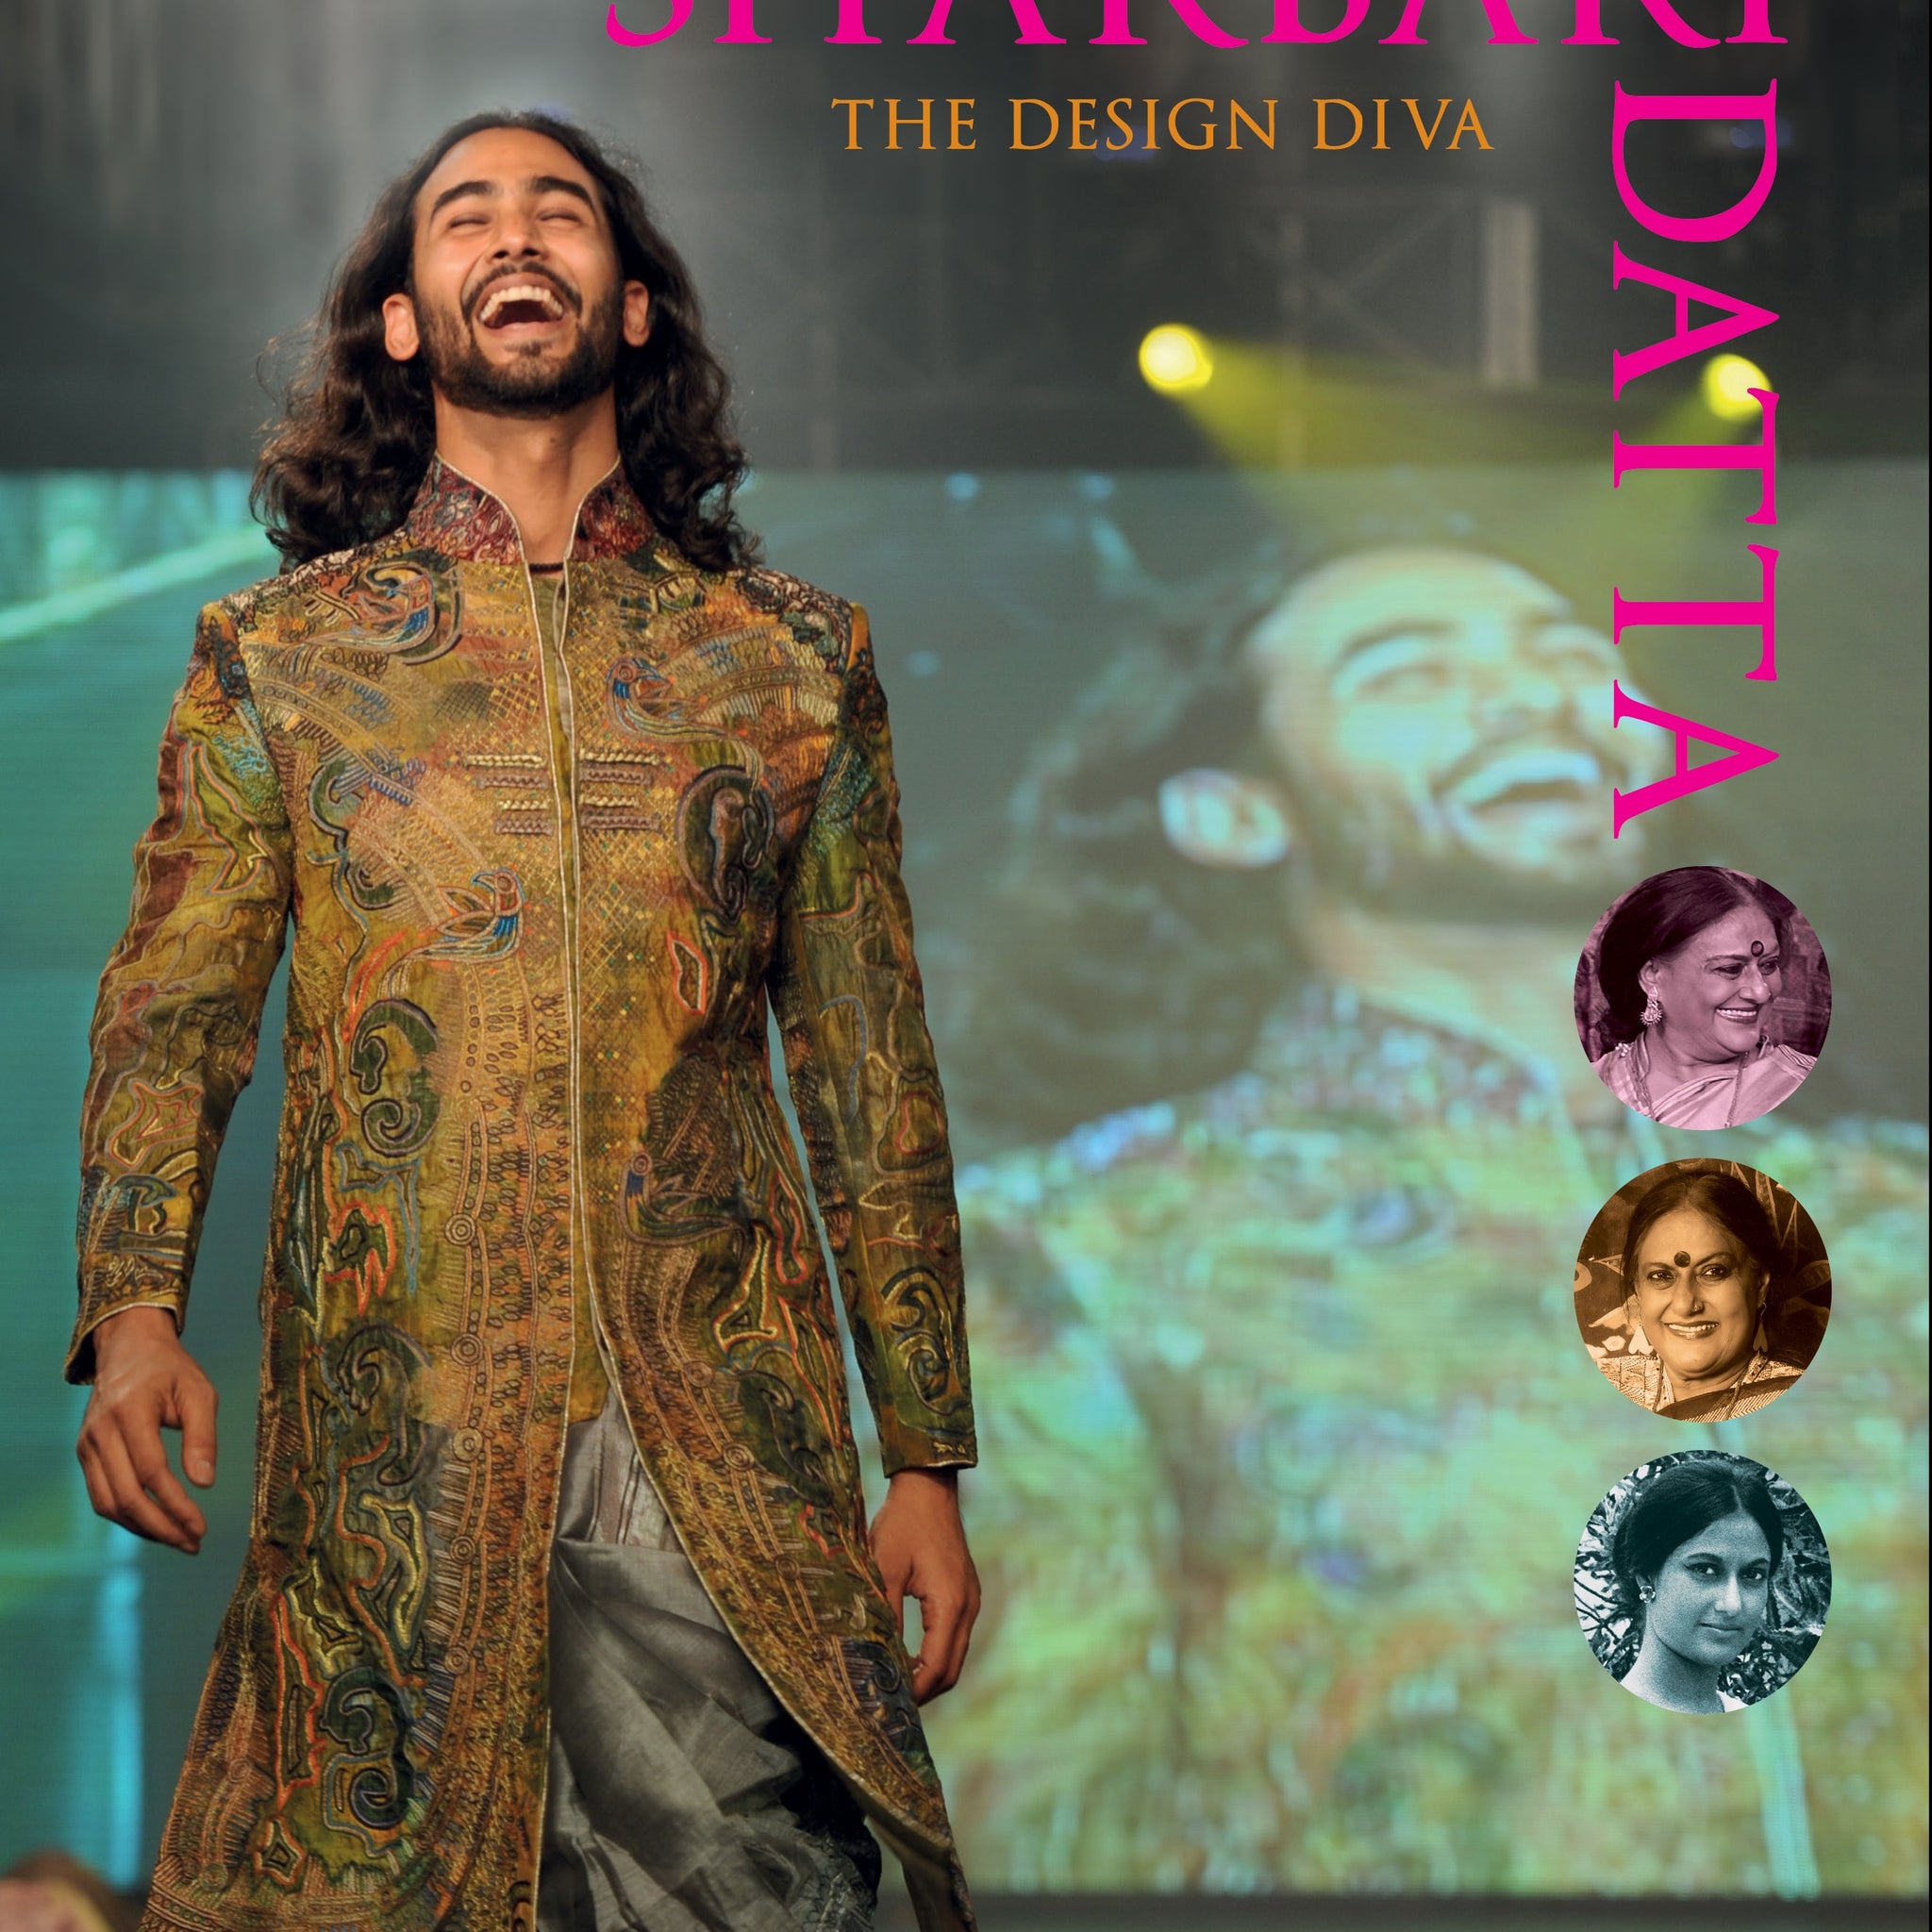 Sharbari Datta: The Design Diva